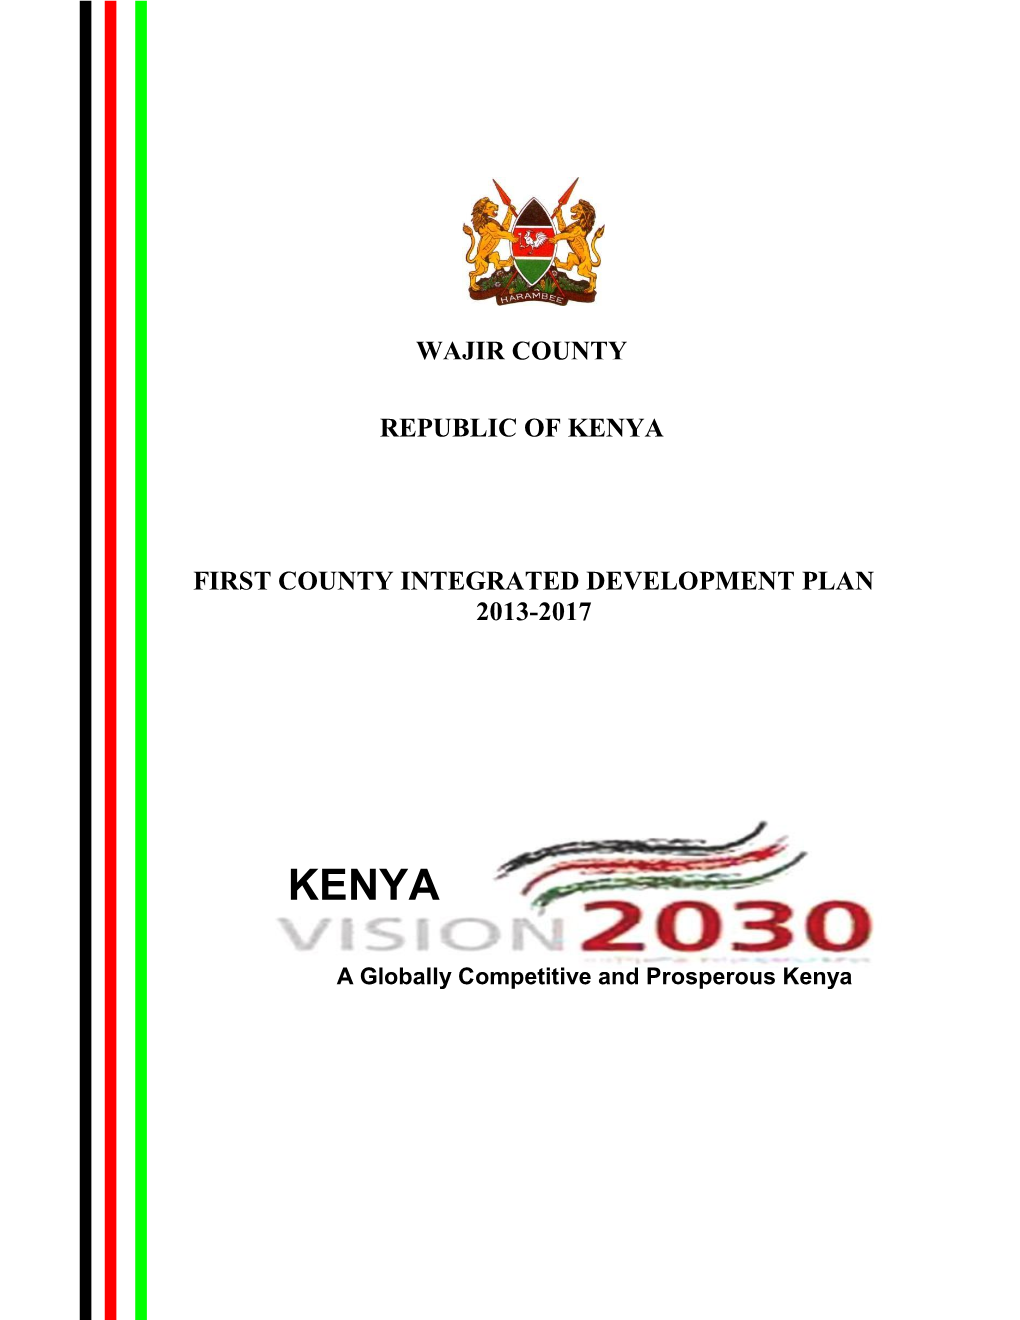 Wajir County Republic of Kenya First County